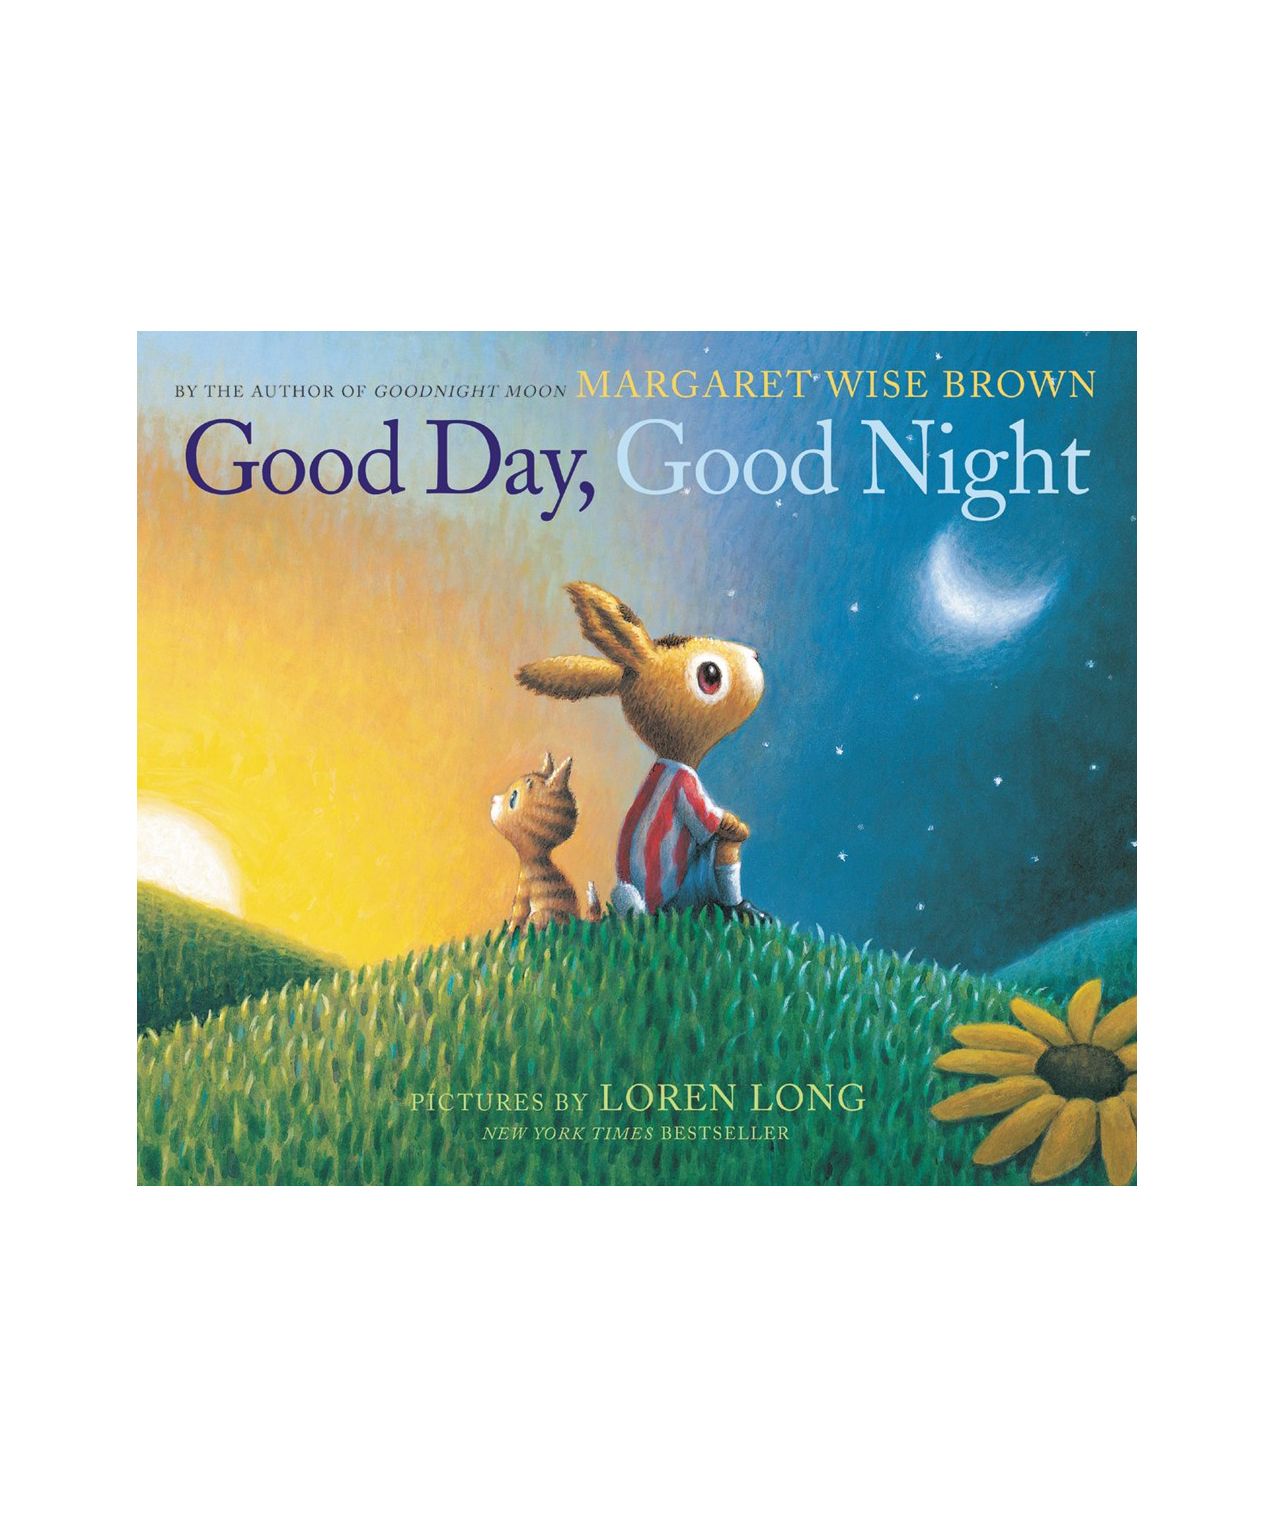 Memoriserad Goodnight Moon? Plocka upp den här aldrig tidigare publicerade boken från Margaret Wise Brown